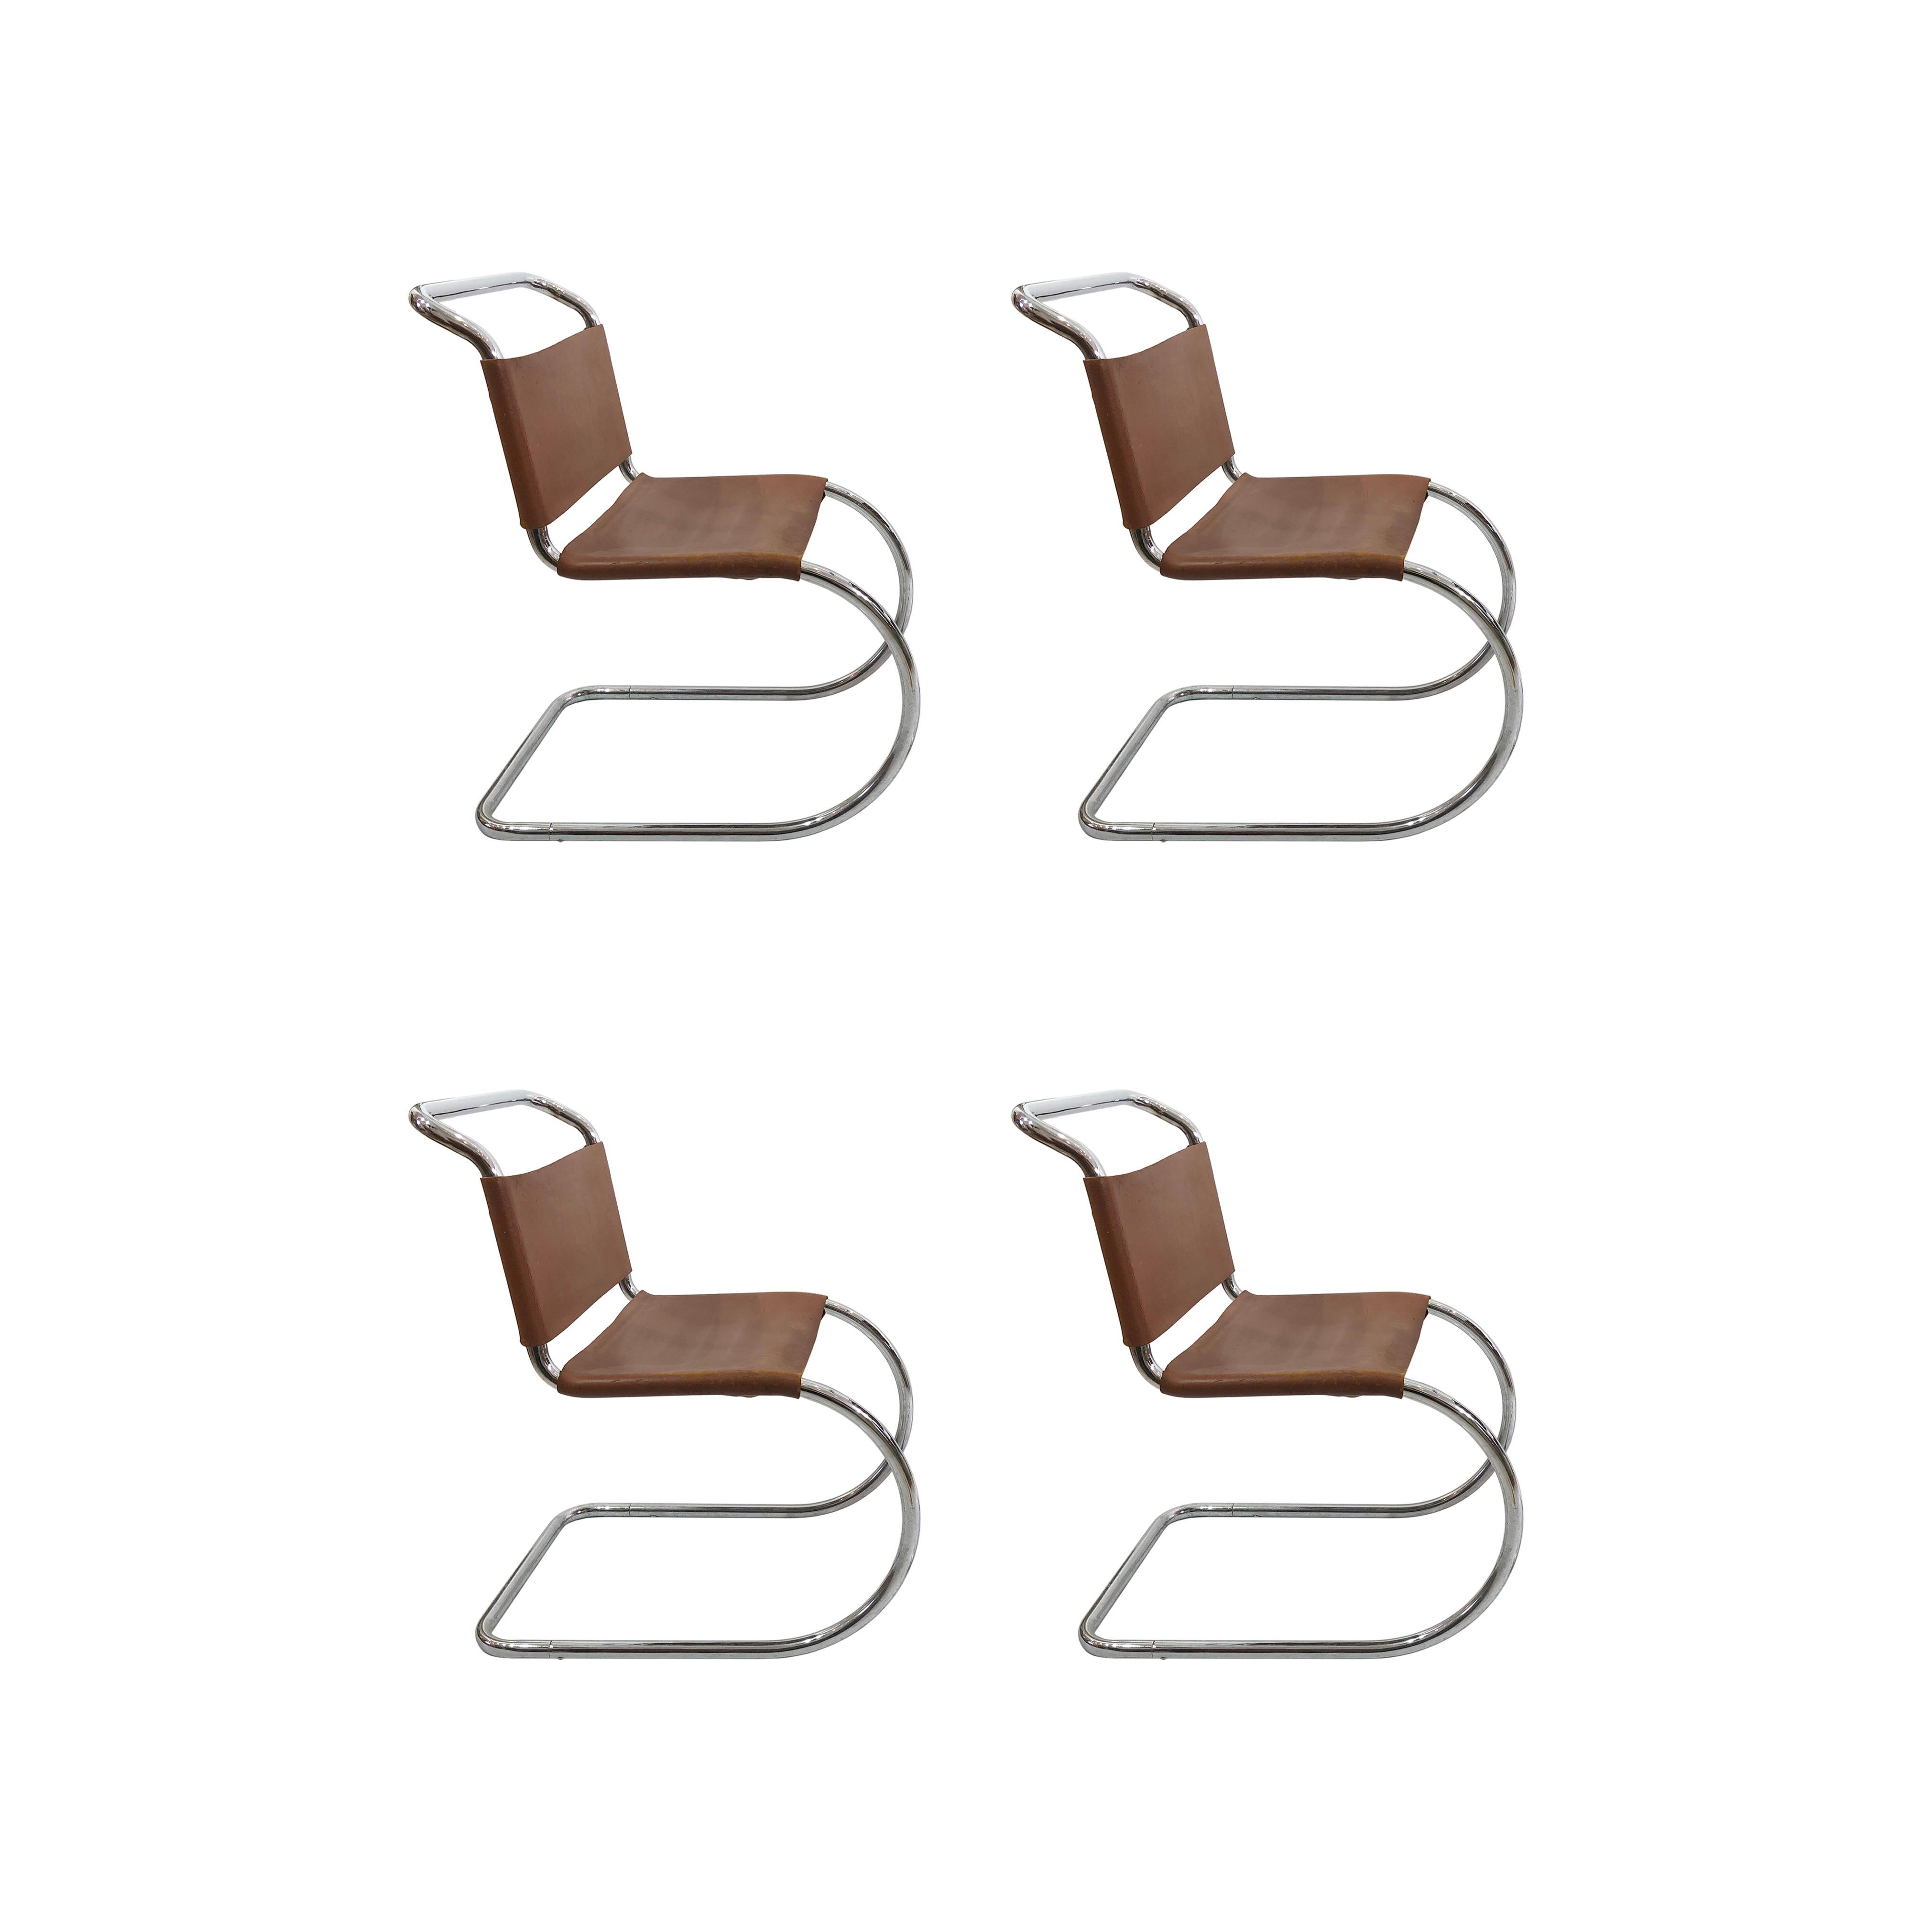 Ensemble complet de quatre chaises MR10 à piétement luge chromé de Ludwig Mies van der Rohe, en cuir marron. Cet ensemble de chaises est un exemple du début des années 1960 de son célèbre design produit par Knoll International. La chaise MR10 a été